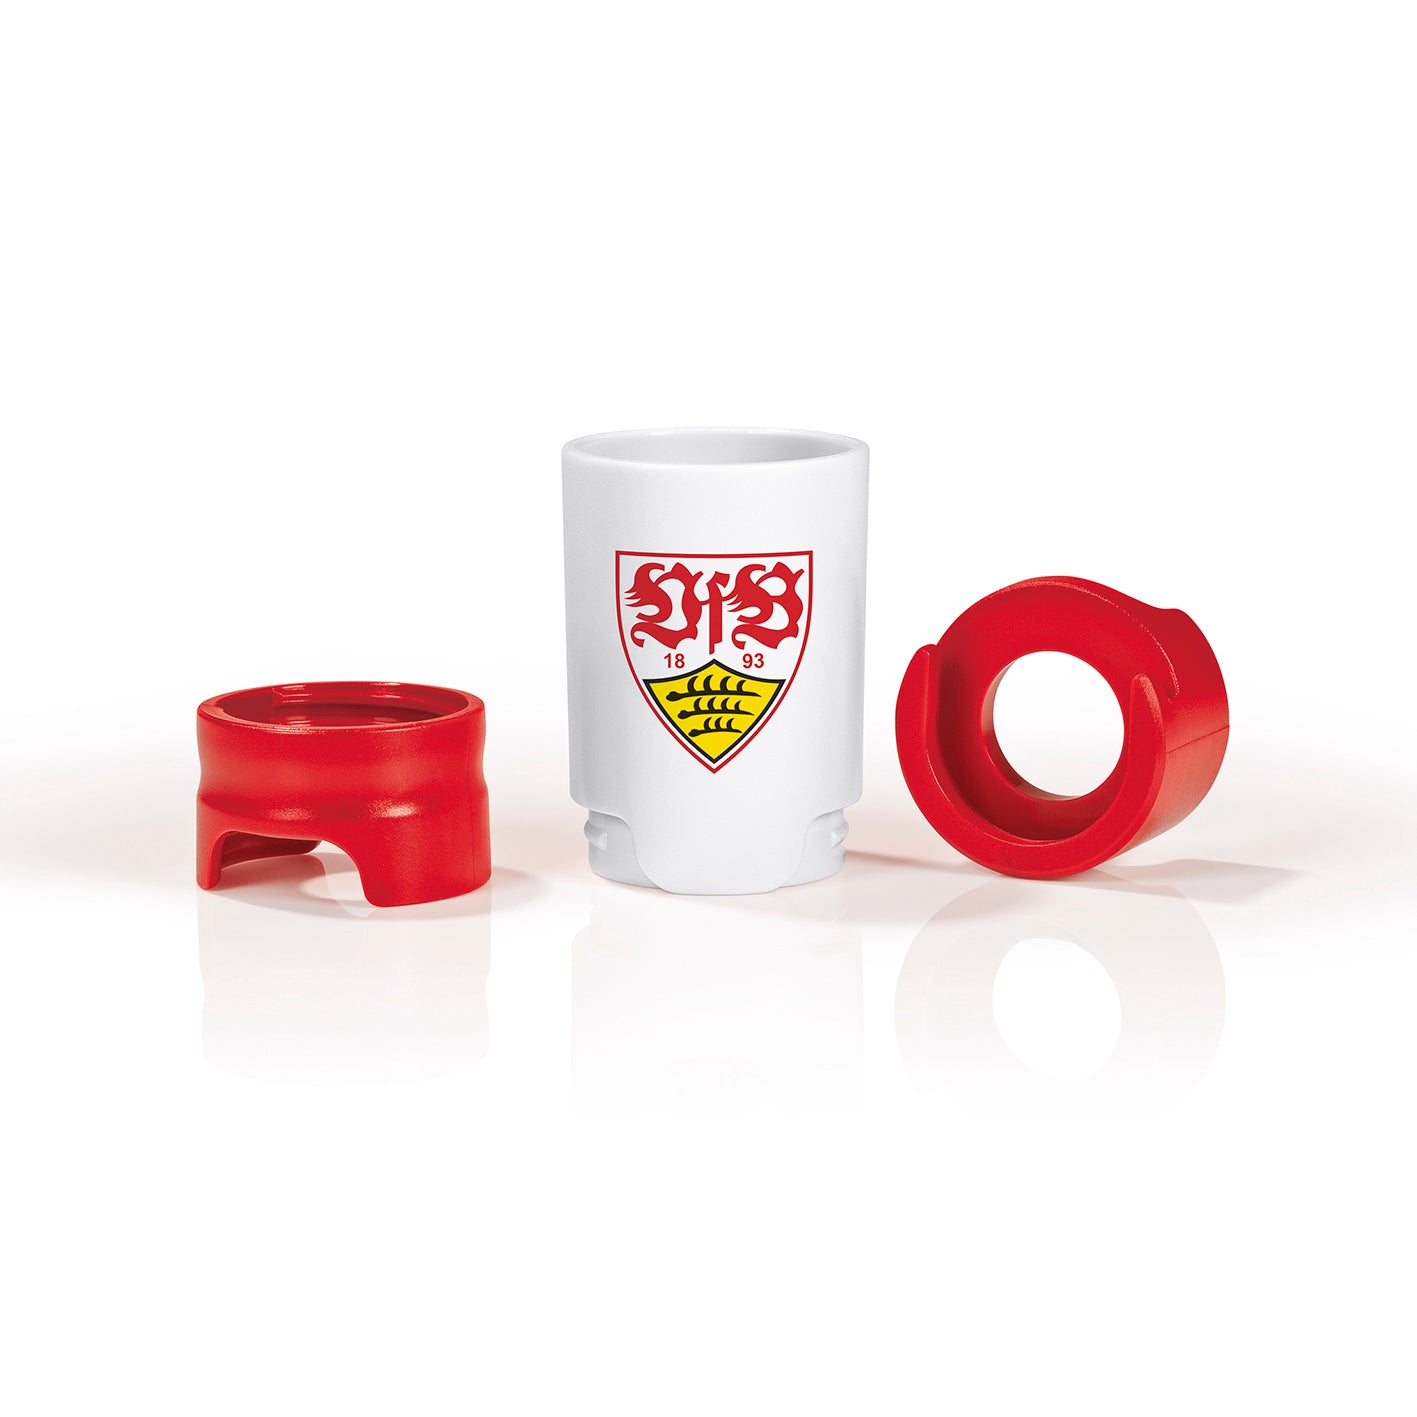 Bier-Aufbereiter im VfB Stuttgart-Design - 3er-Set